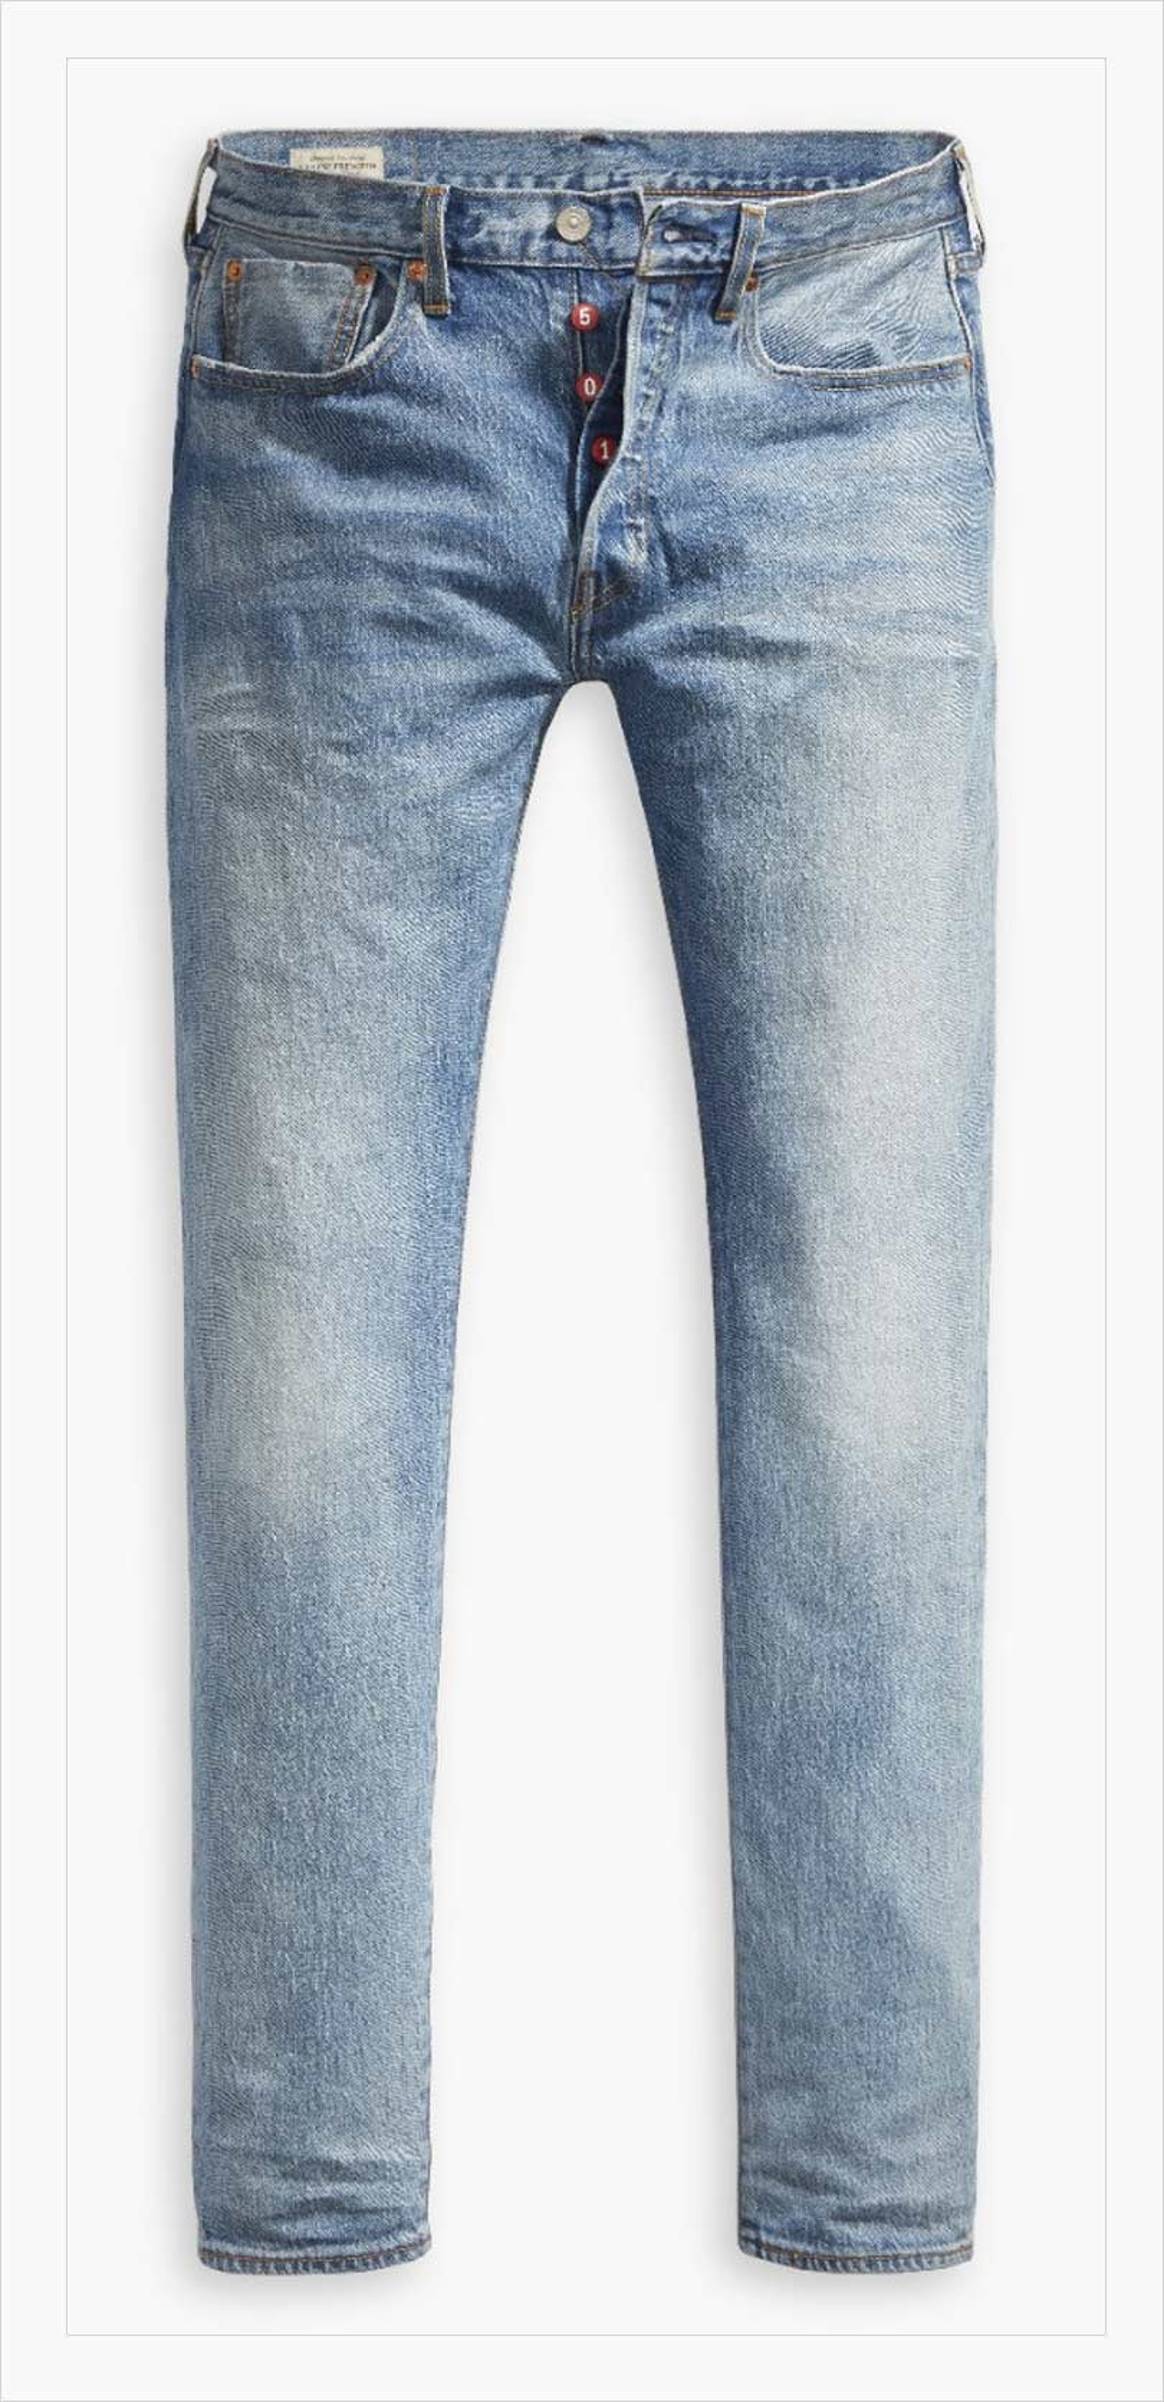 Dit zijn de best verkochte jeans bij 9 grote denimmerken